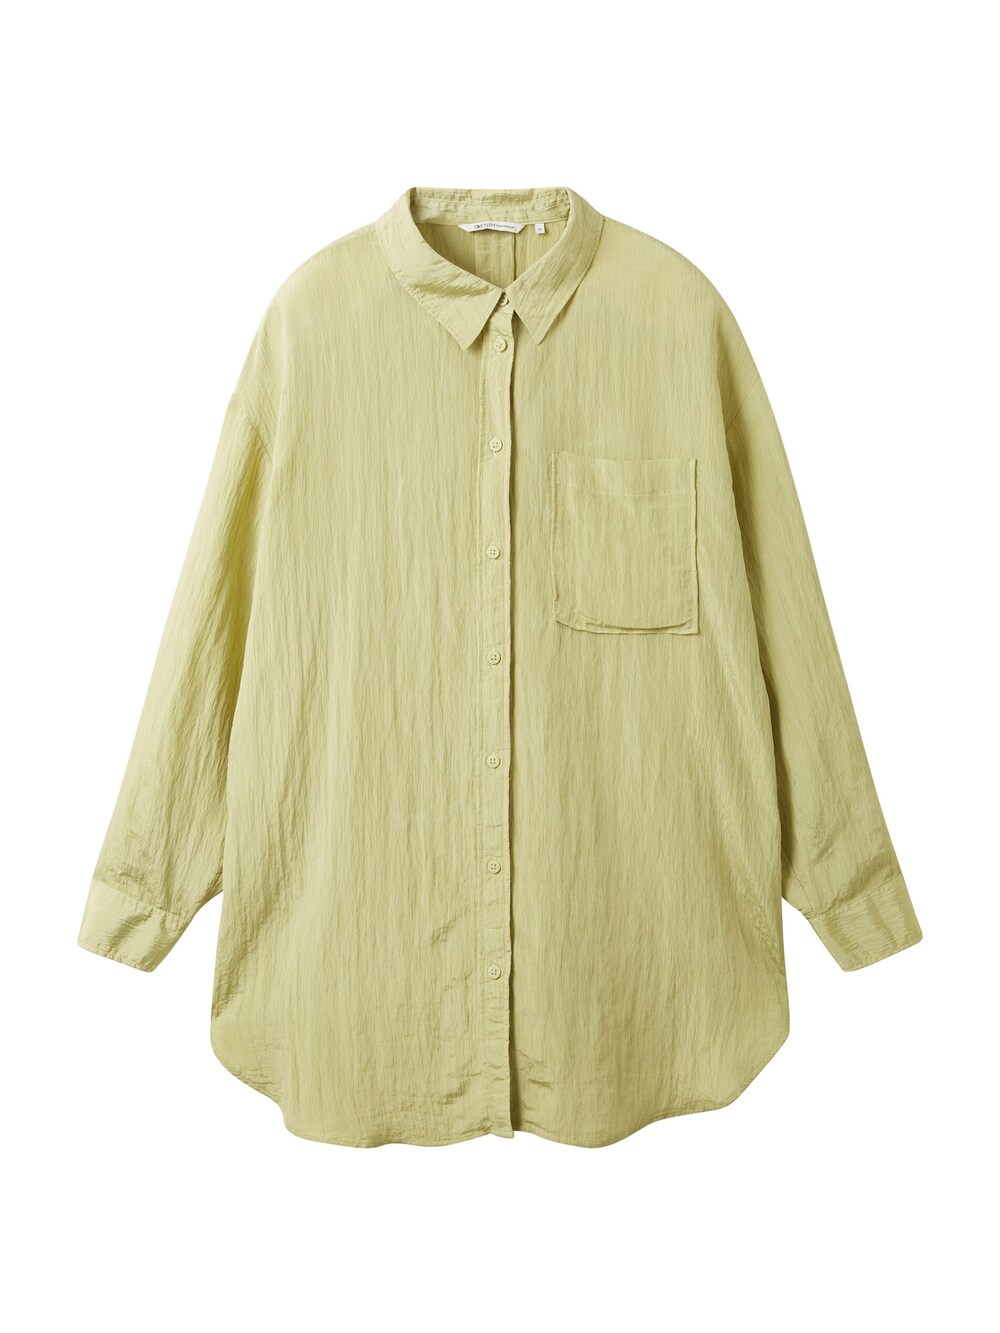 Блузка Tom Tailor, яблоко блузка tom tailor летняя 42 размер